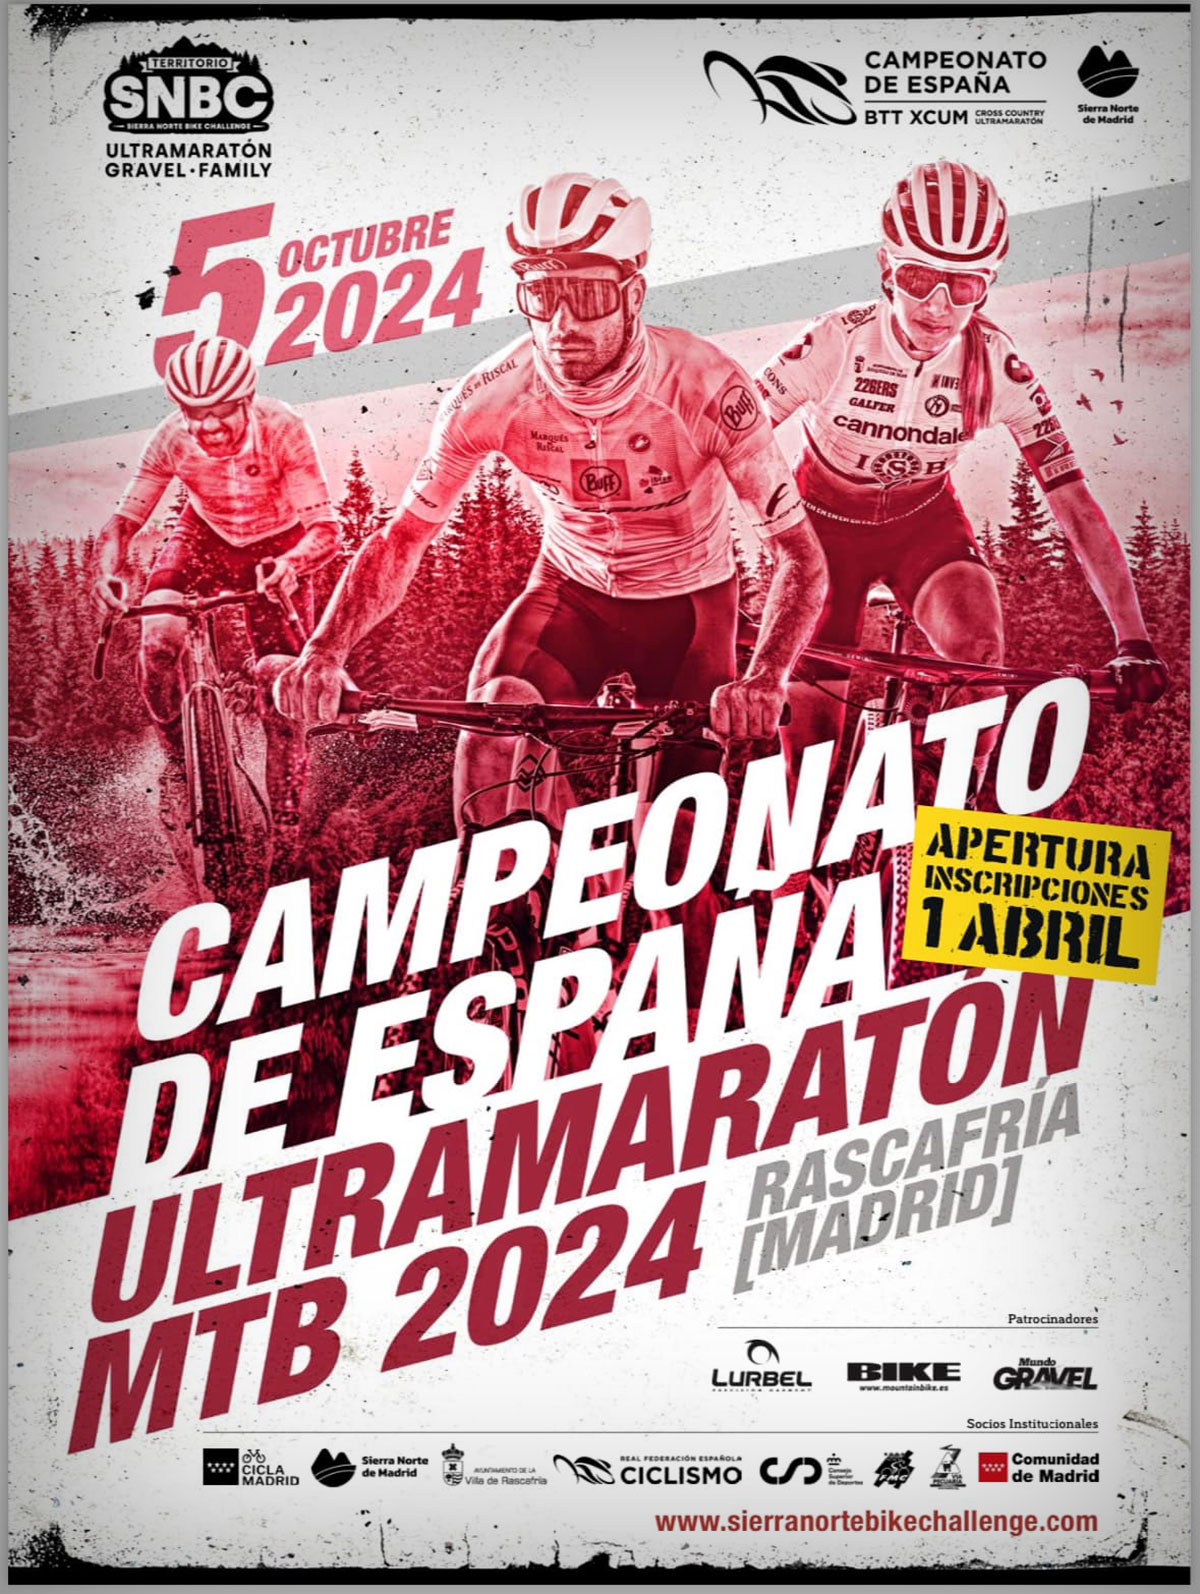 El Campeonato de España de XCUM abre inscripciones para su edición de 2024